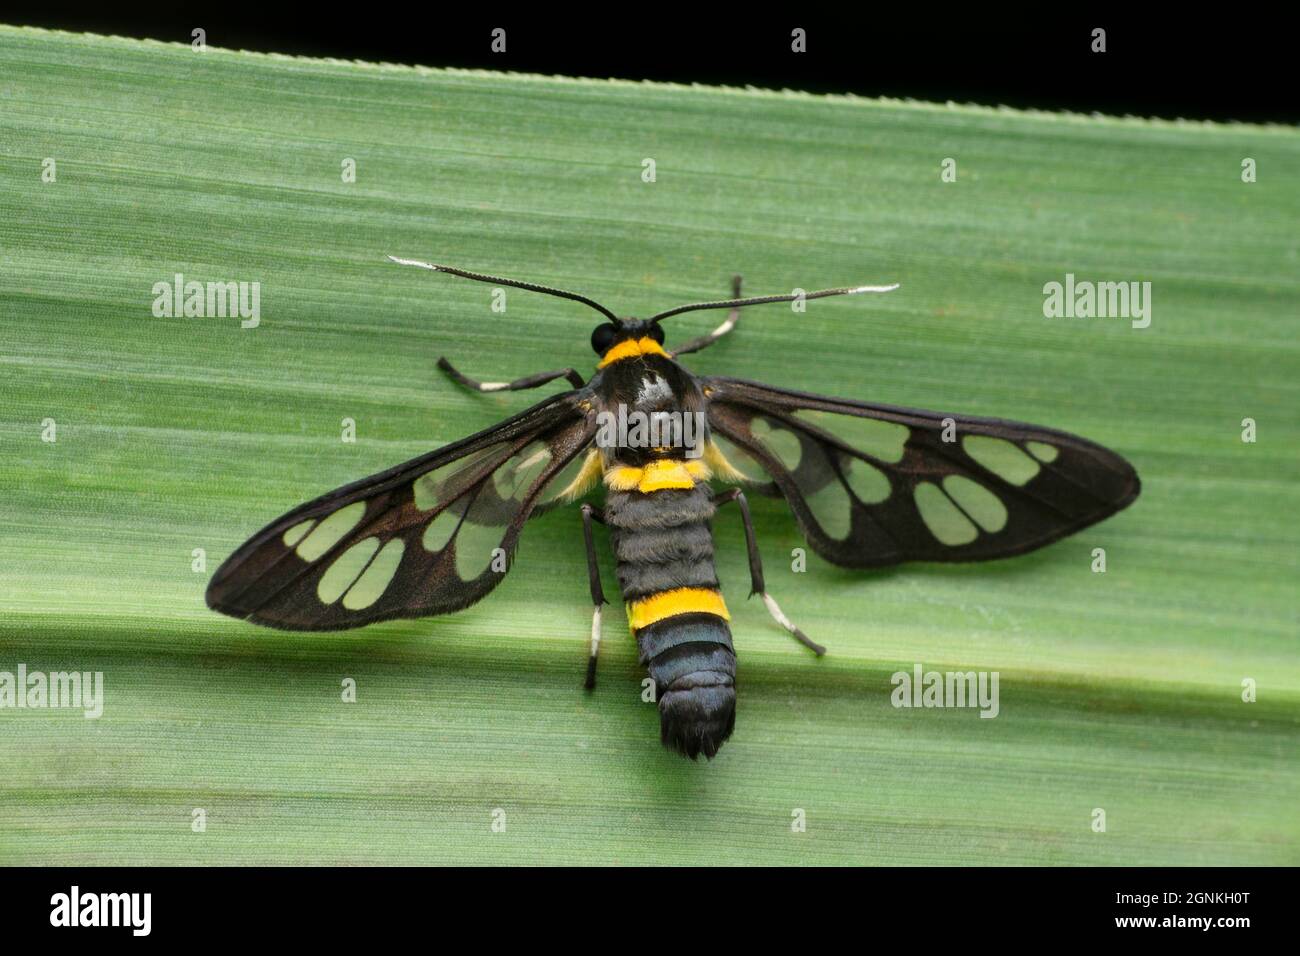 Wasp mimic moth, Satara, Maharashtra, India Stock Photo